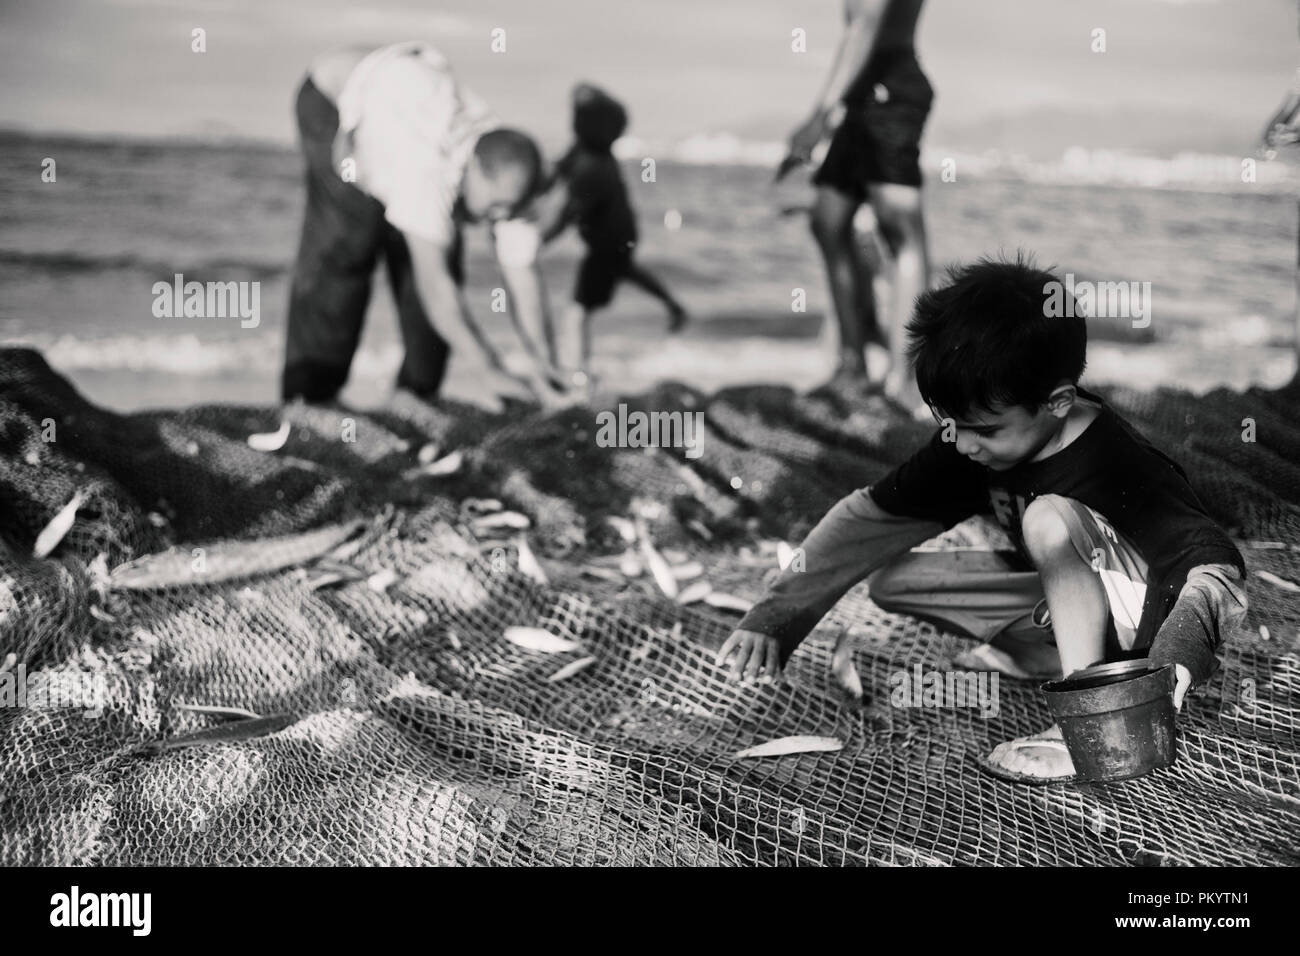 Kind sammelt Fisch im Netz und stellt sie in einen kleinen Eimer. Retro Style Schwarz/Weiß-Fotografie Stockfoto